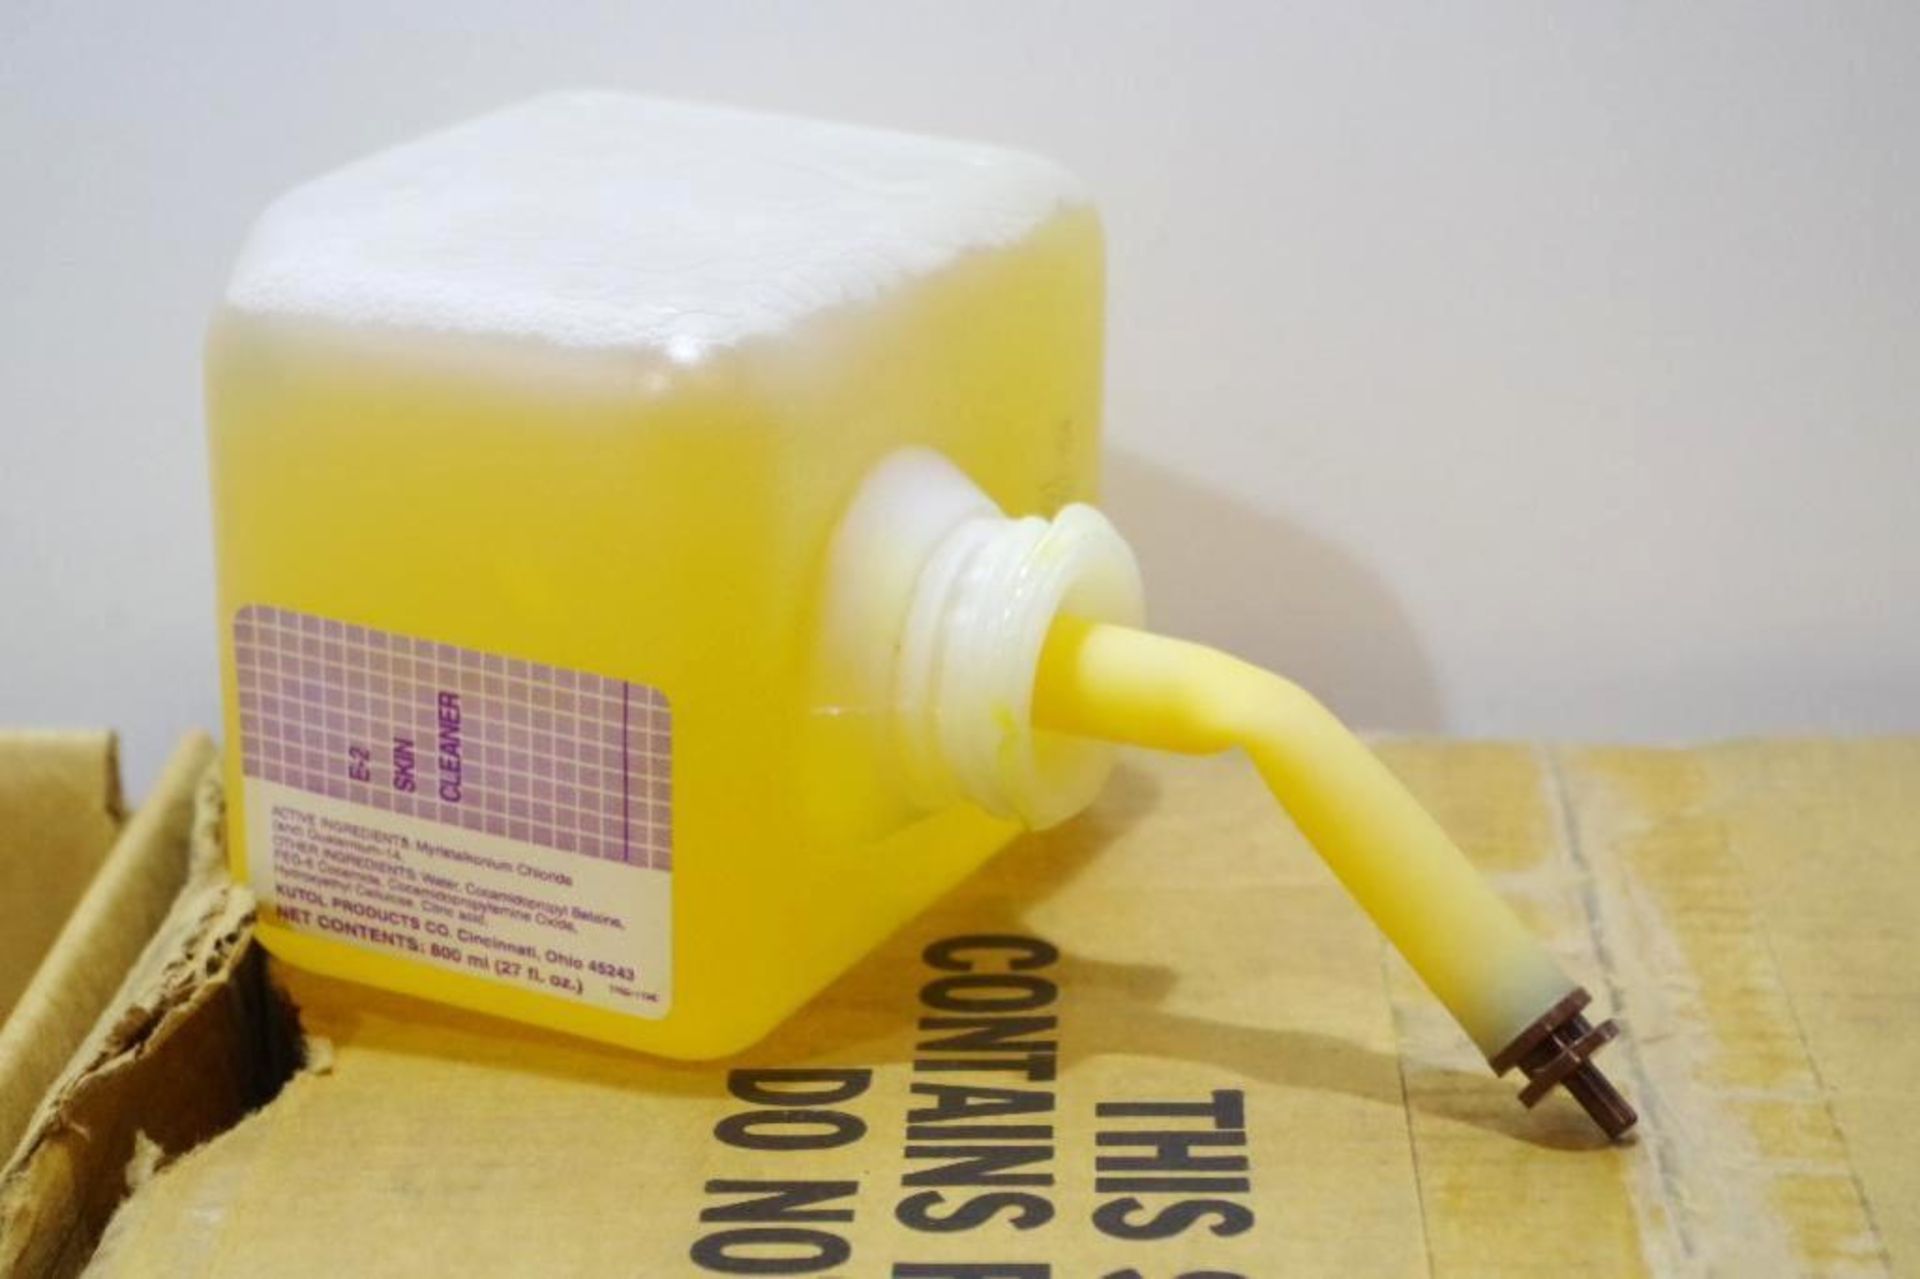 (2) Cases HSC E-2 Skin Cleanser Sanitizer 800 ml. Bottles (2 Cases of 12 Bottles) - Image 2 of 4